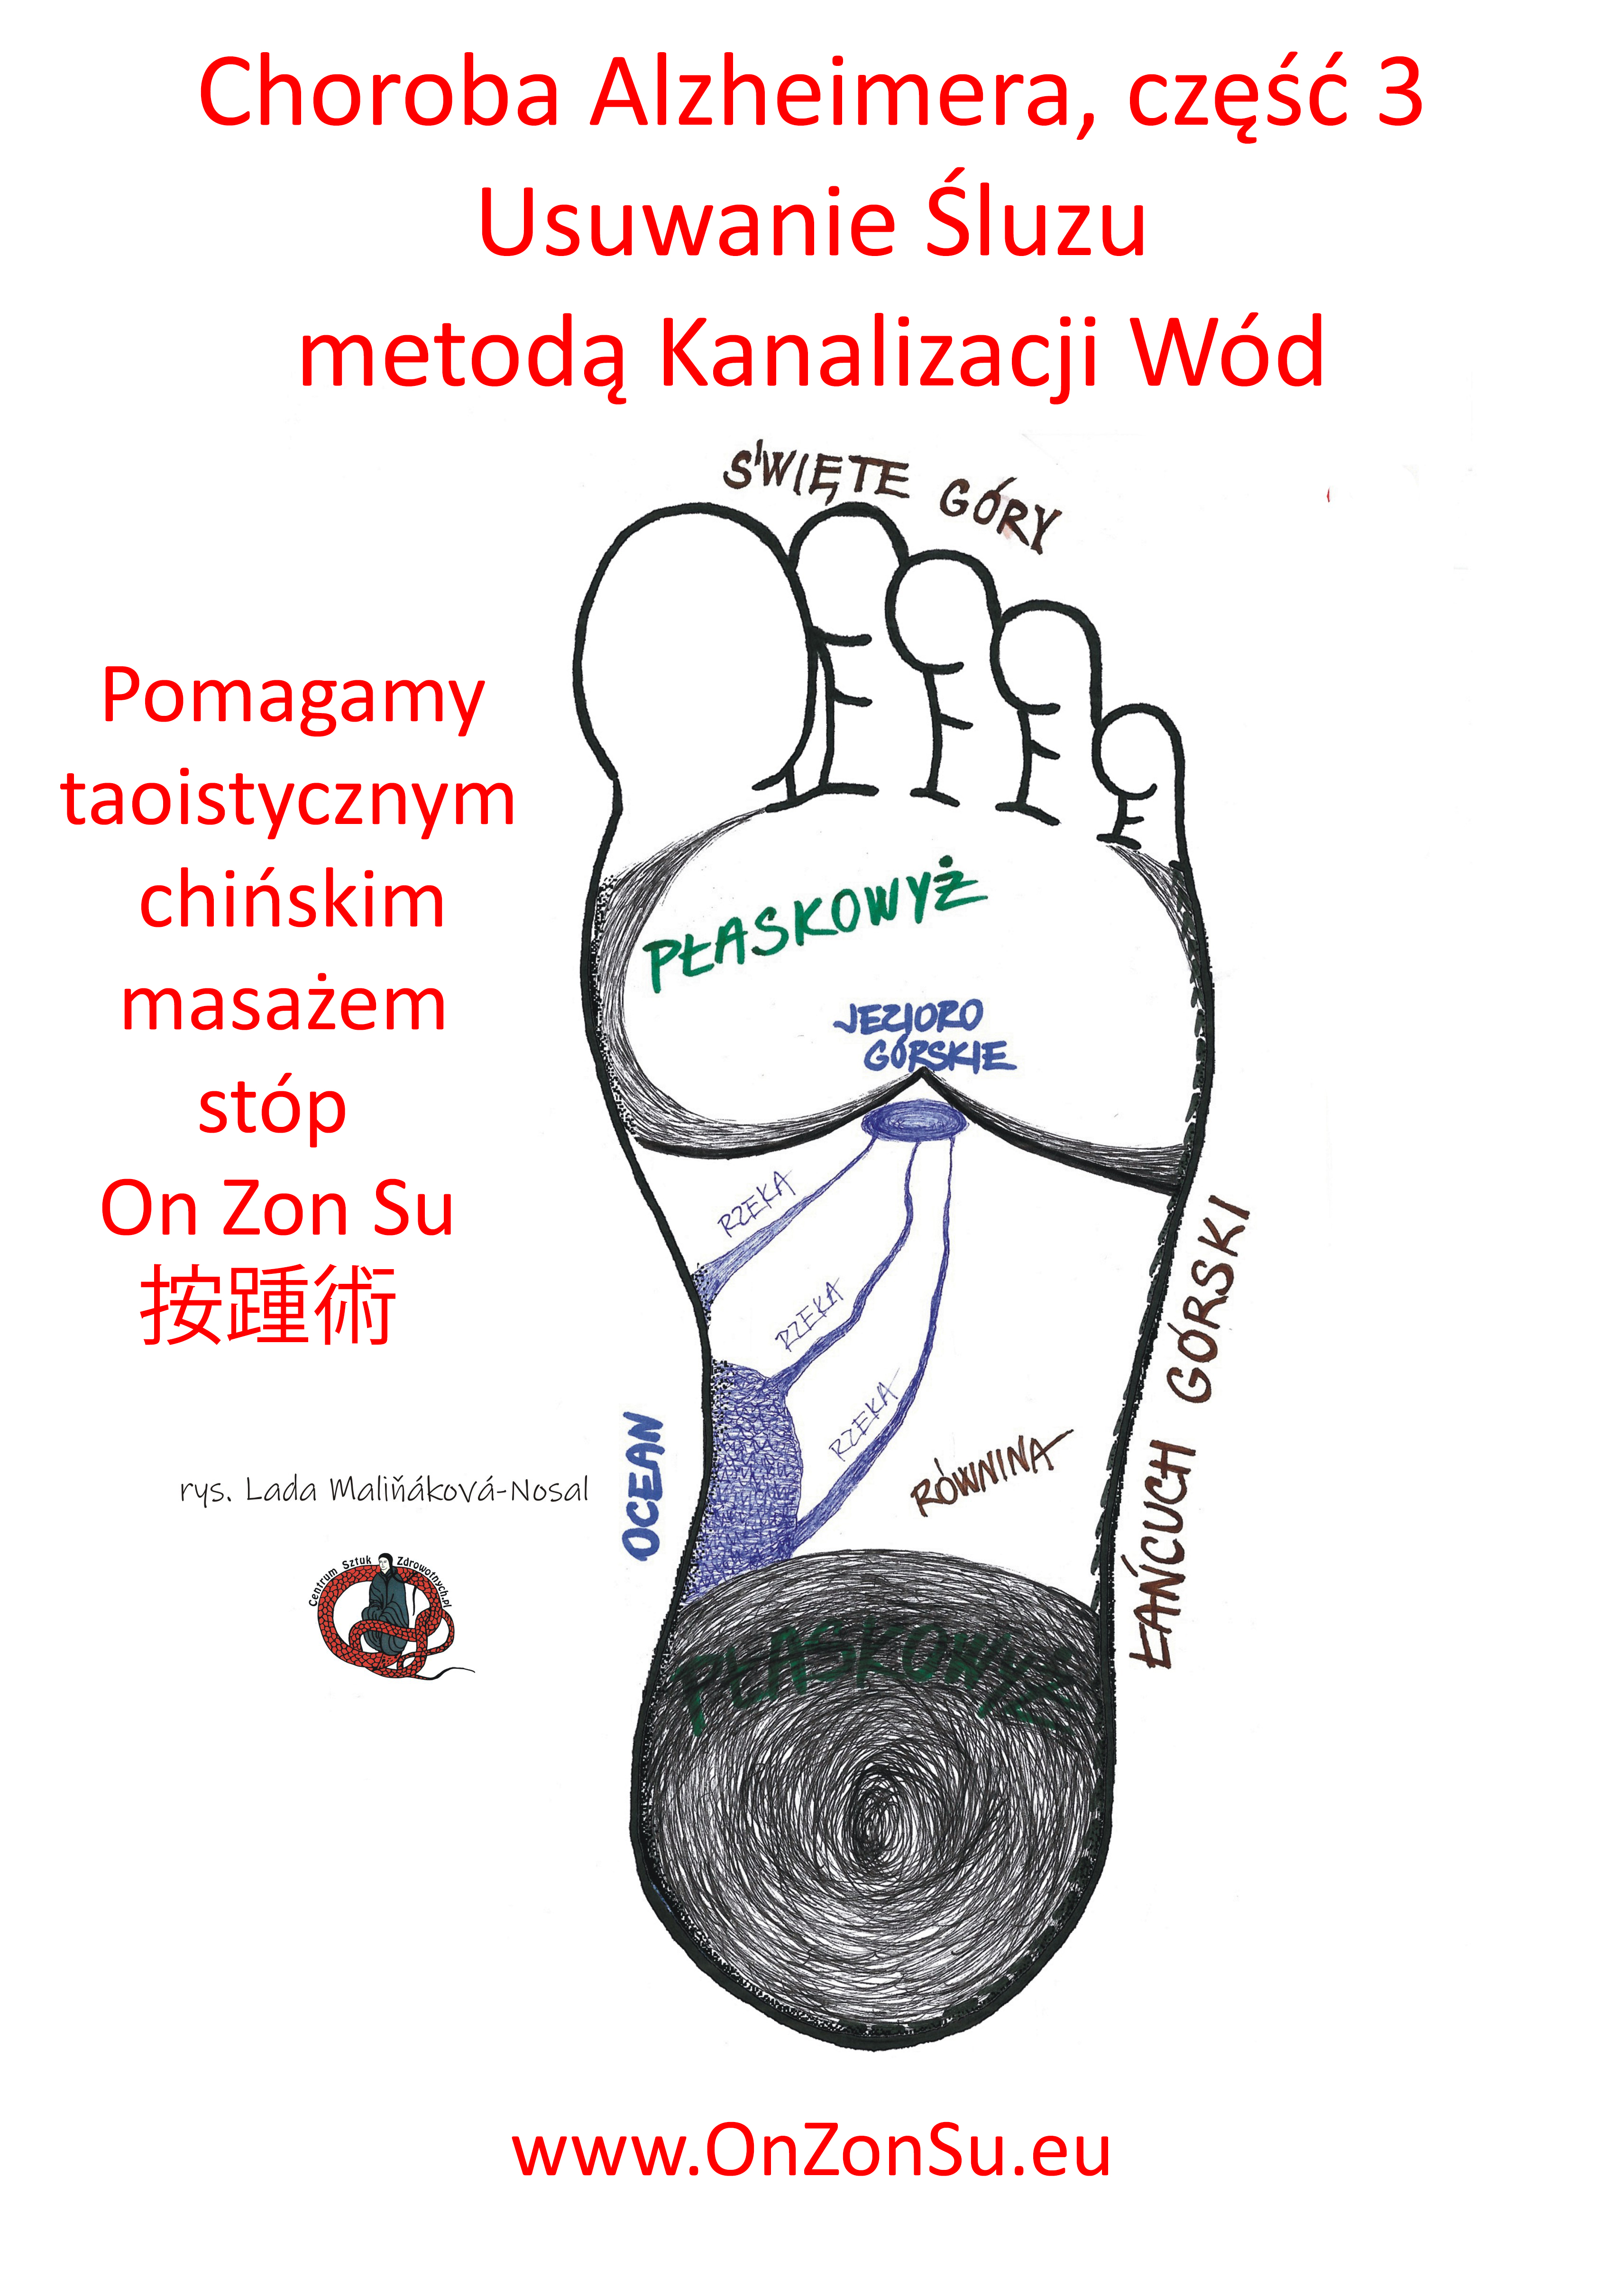 Kurs masażu stóp On Zon Su, Szkolenia refleksologii stóp - Choroba Alzheimera, część 3. Usuwanie Śluzu metodą Kanalizacji Wód MEM.jpg